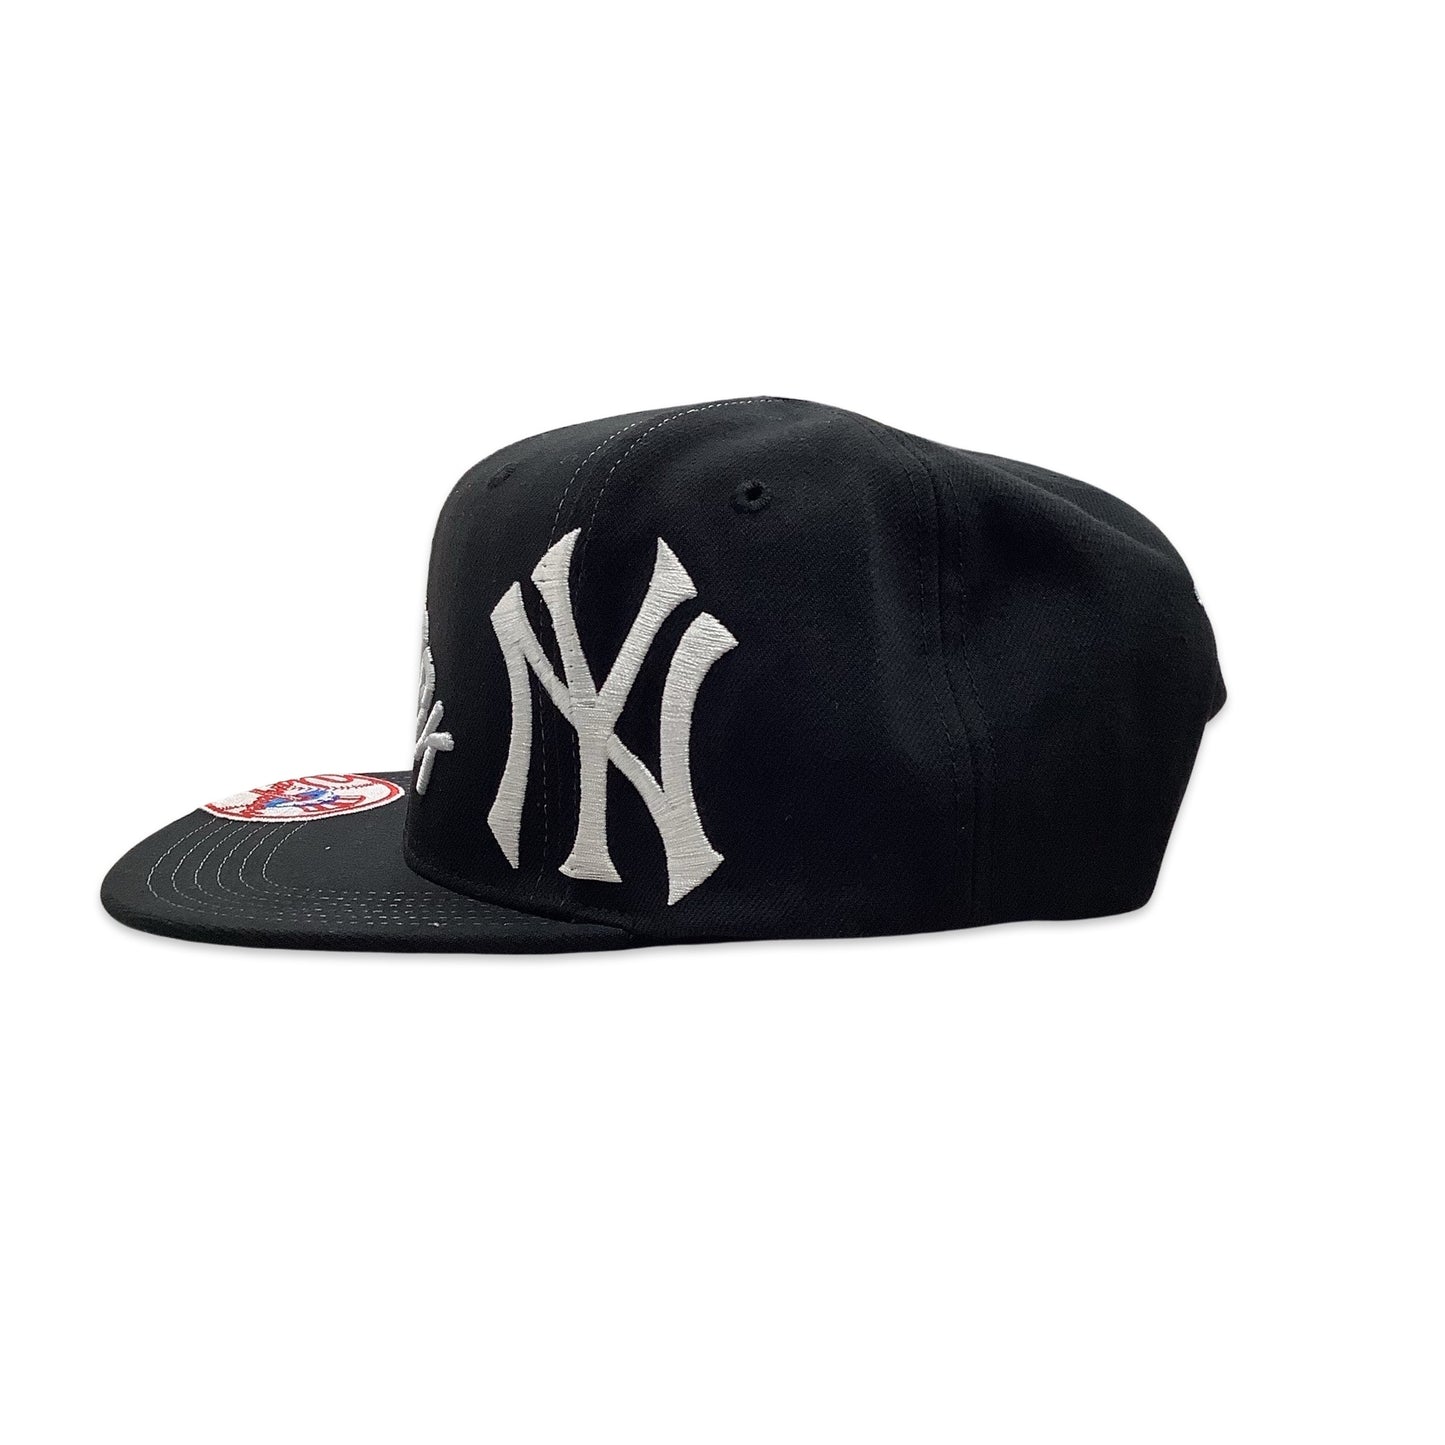 Mitchell N Ness New York Yankees